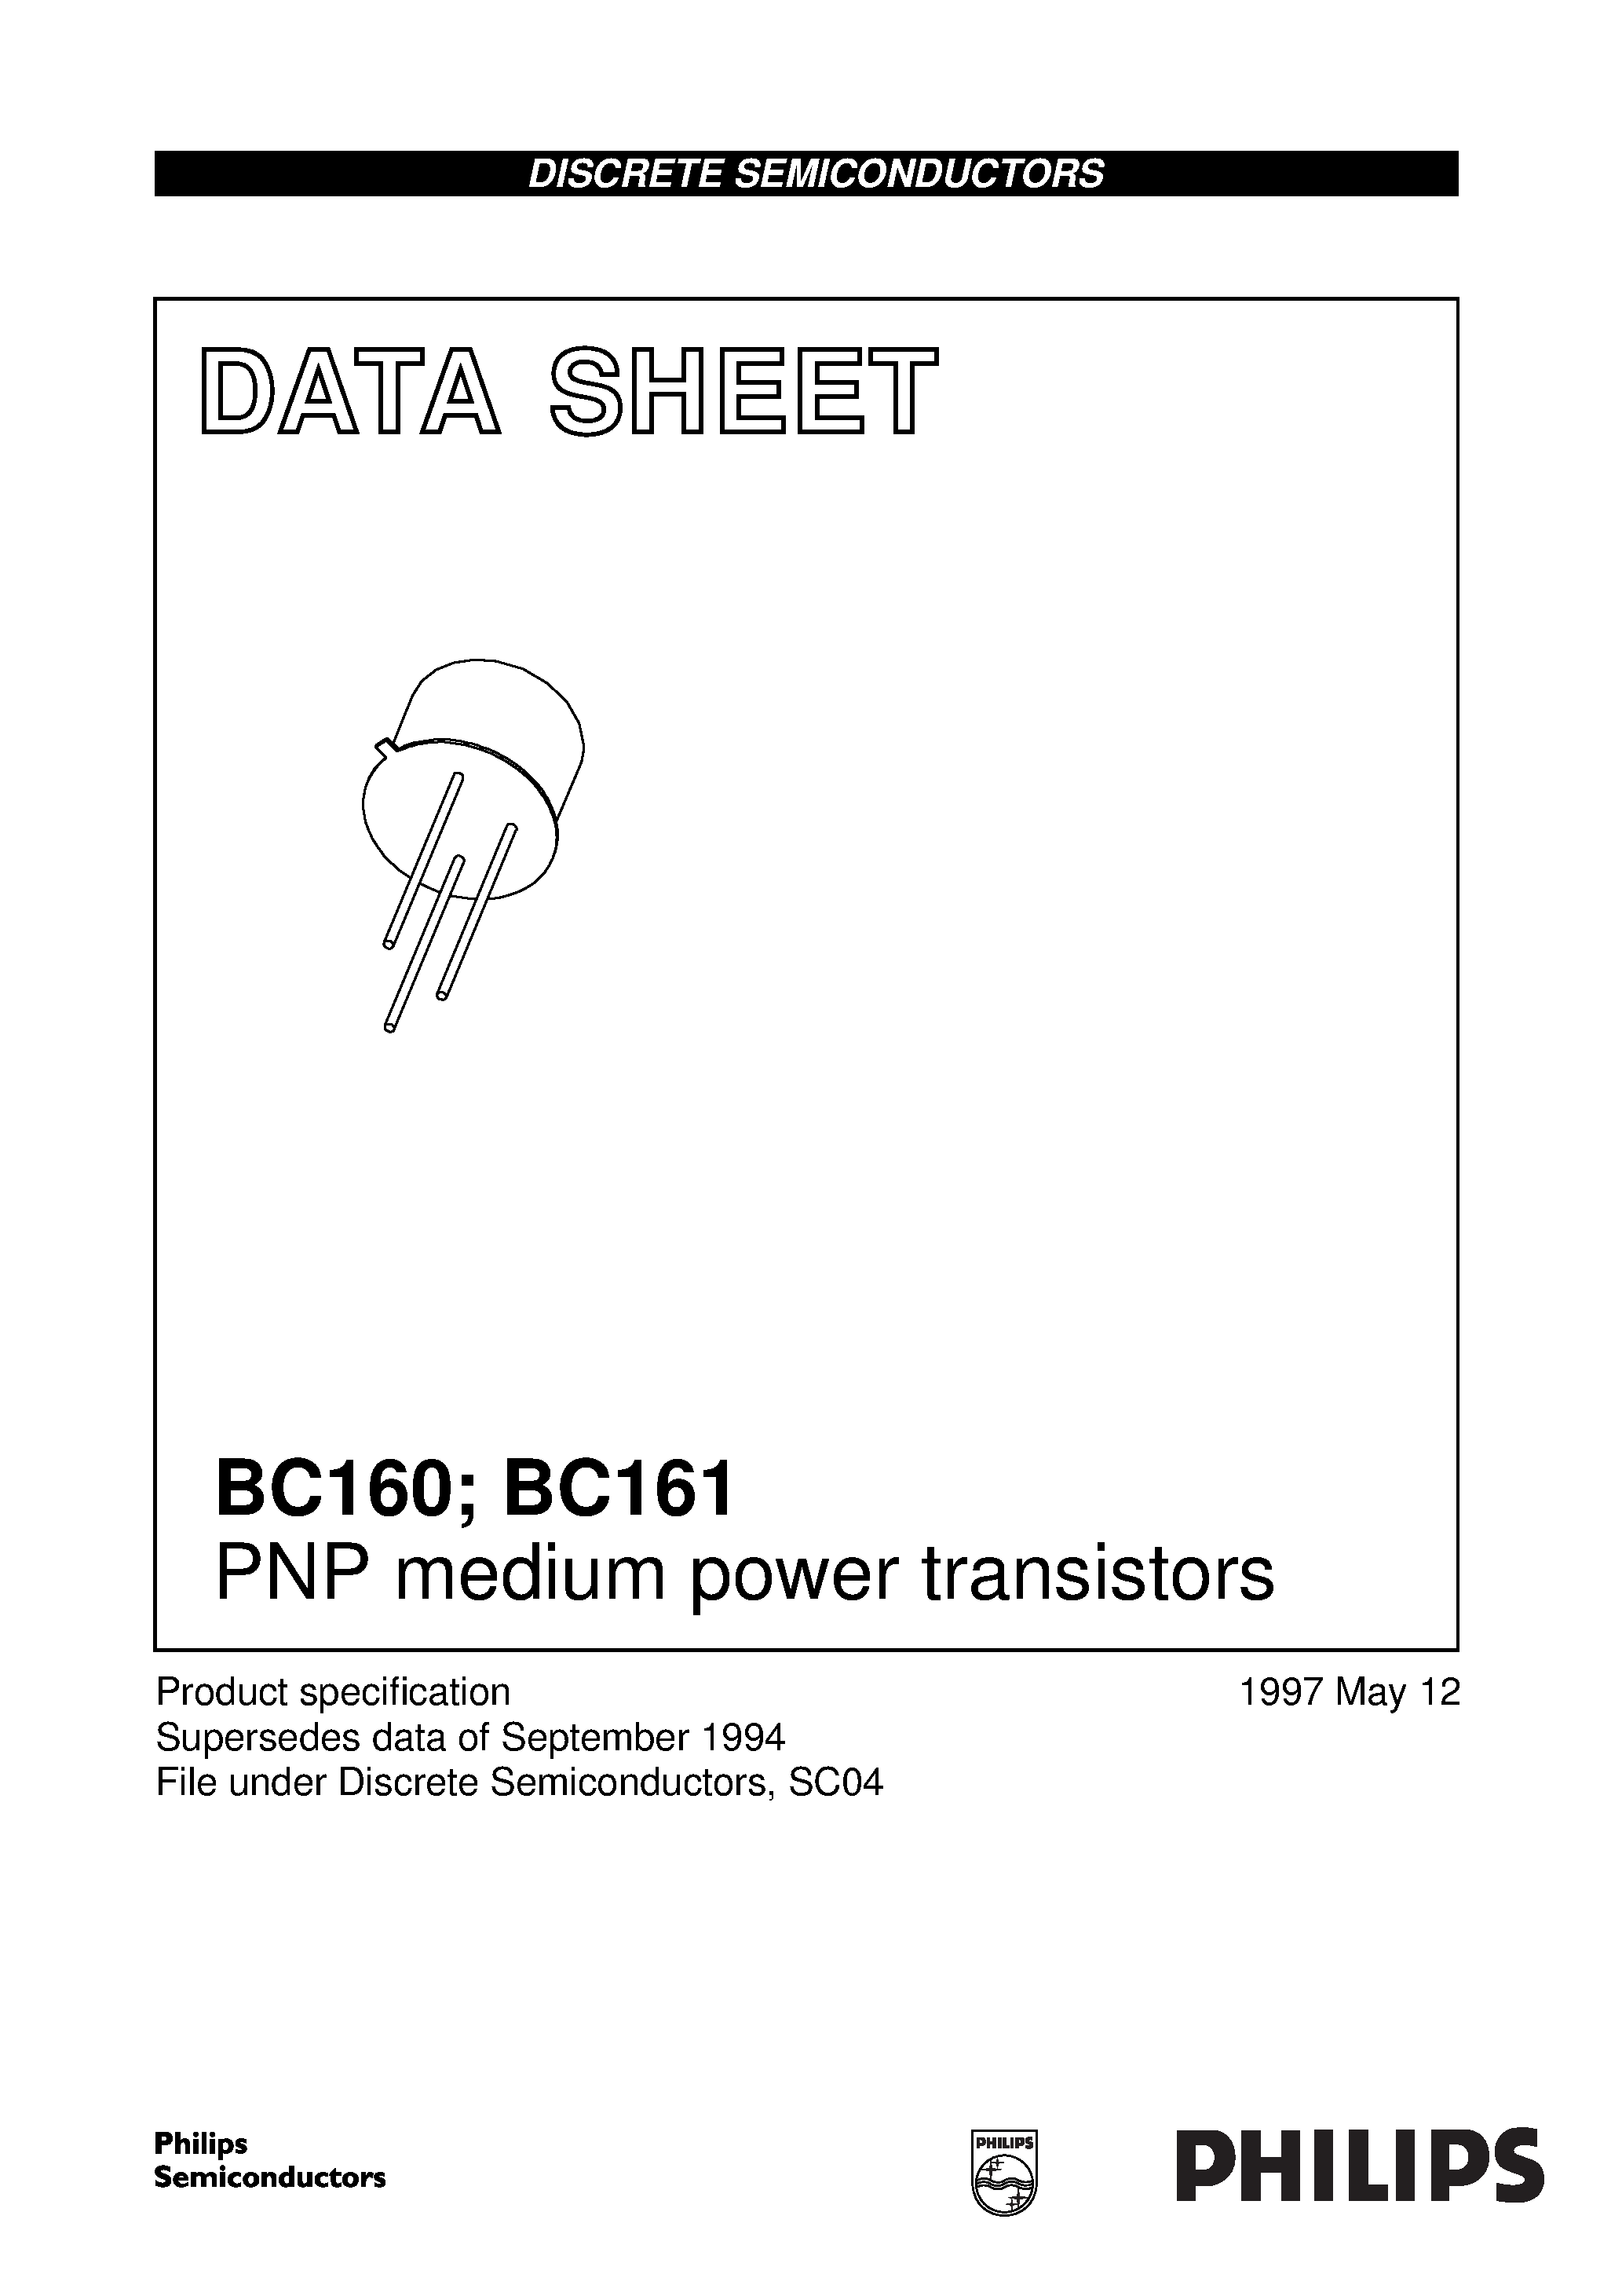 Даташит BC161-16 - PNP medium power transistors страница 1